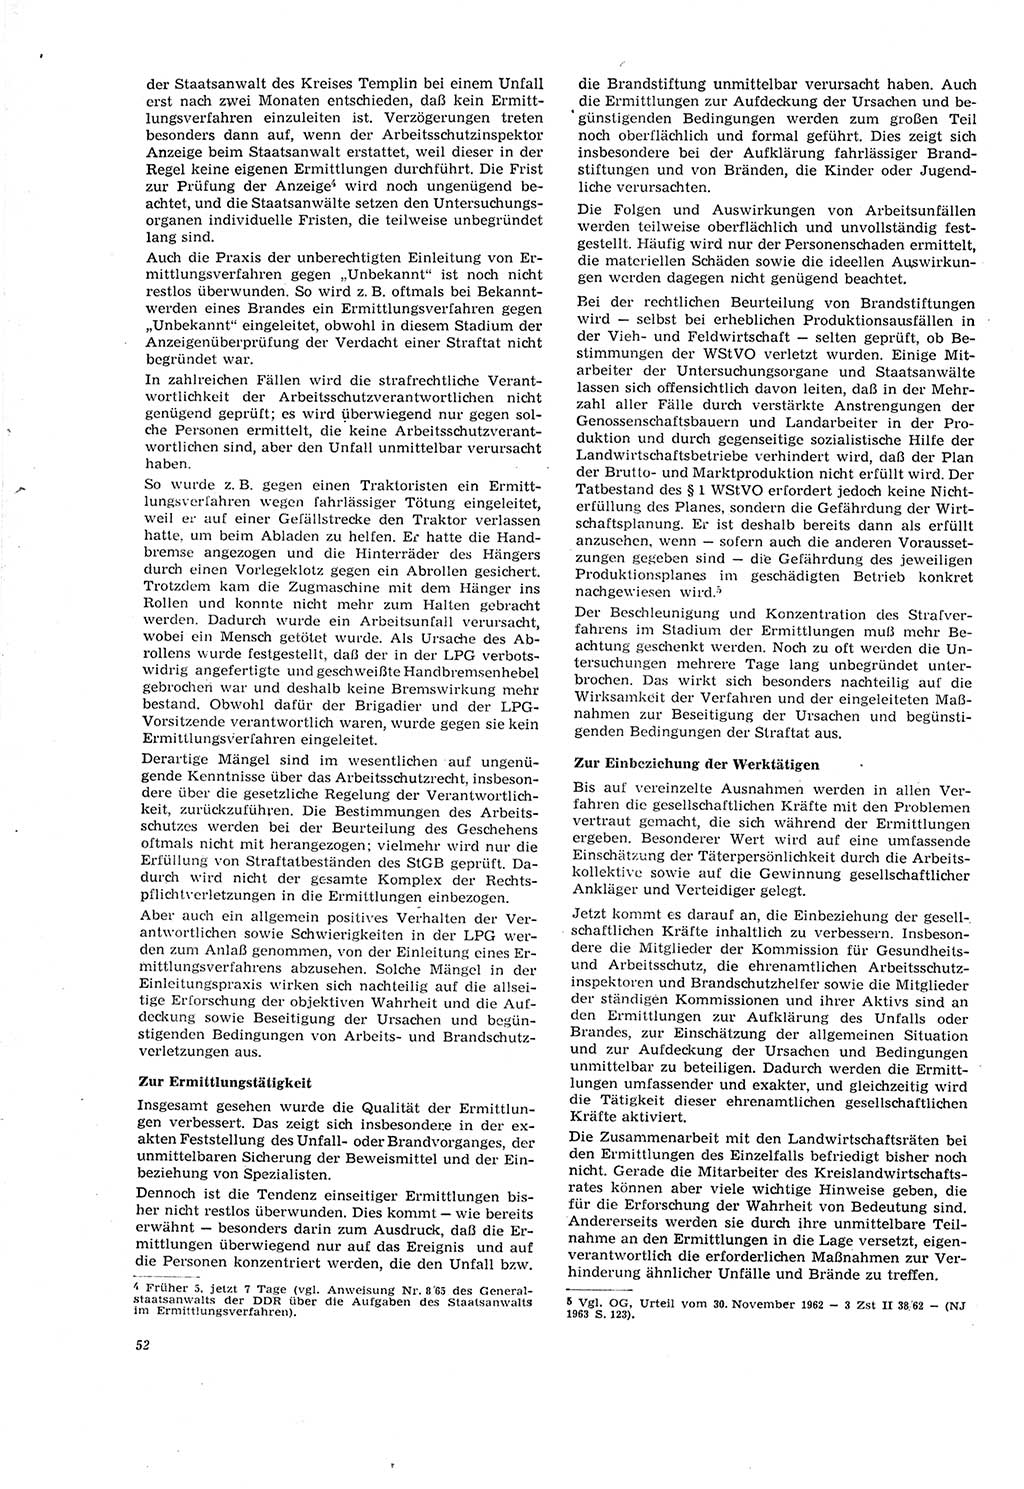 Neue Justiz (NJ), Zeitschrift für Recht und Rechtswissenschaft [Deutsche Demokratische Republik (DDR)], 20. Jahrgang 1966, Seite 52 (NJ DDR 1966, S. 52)